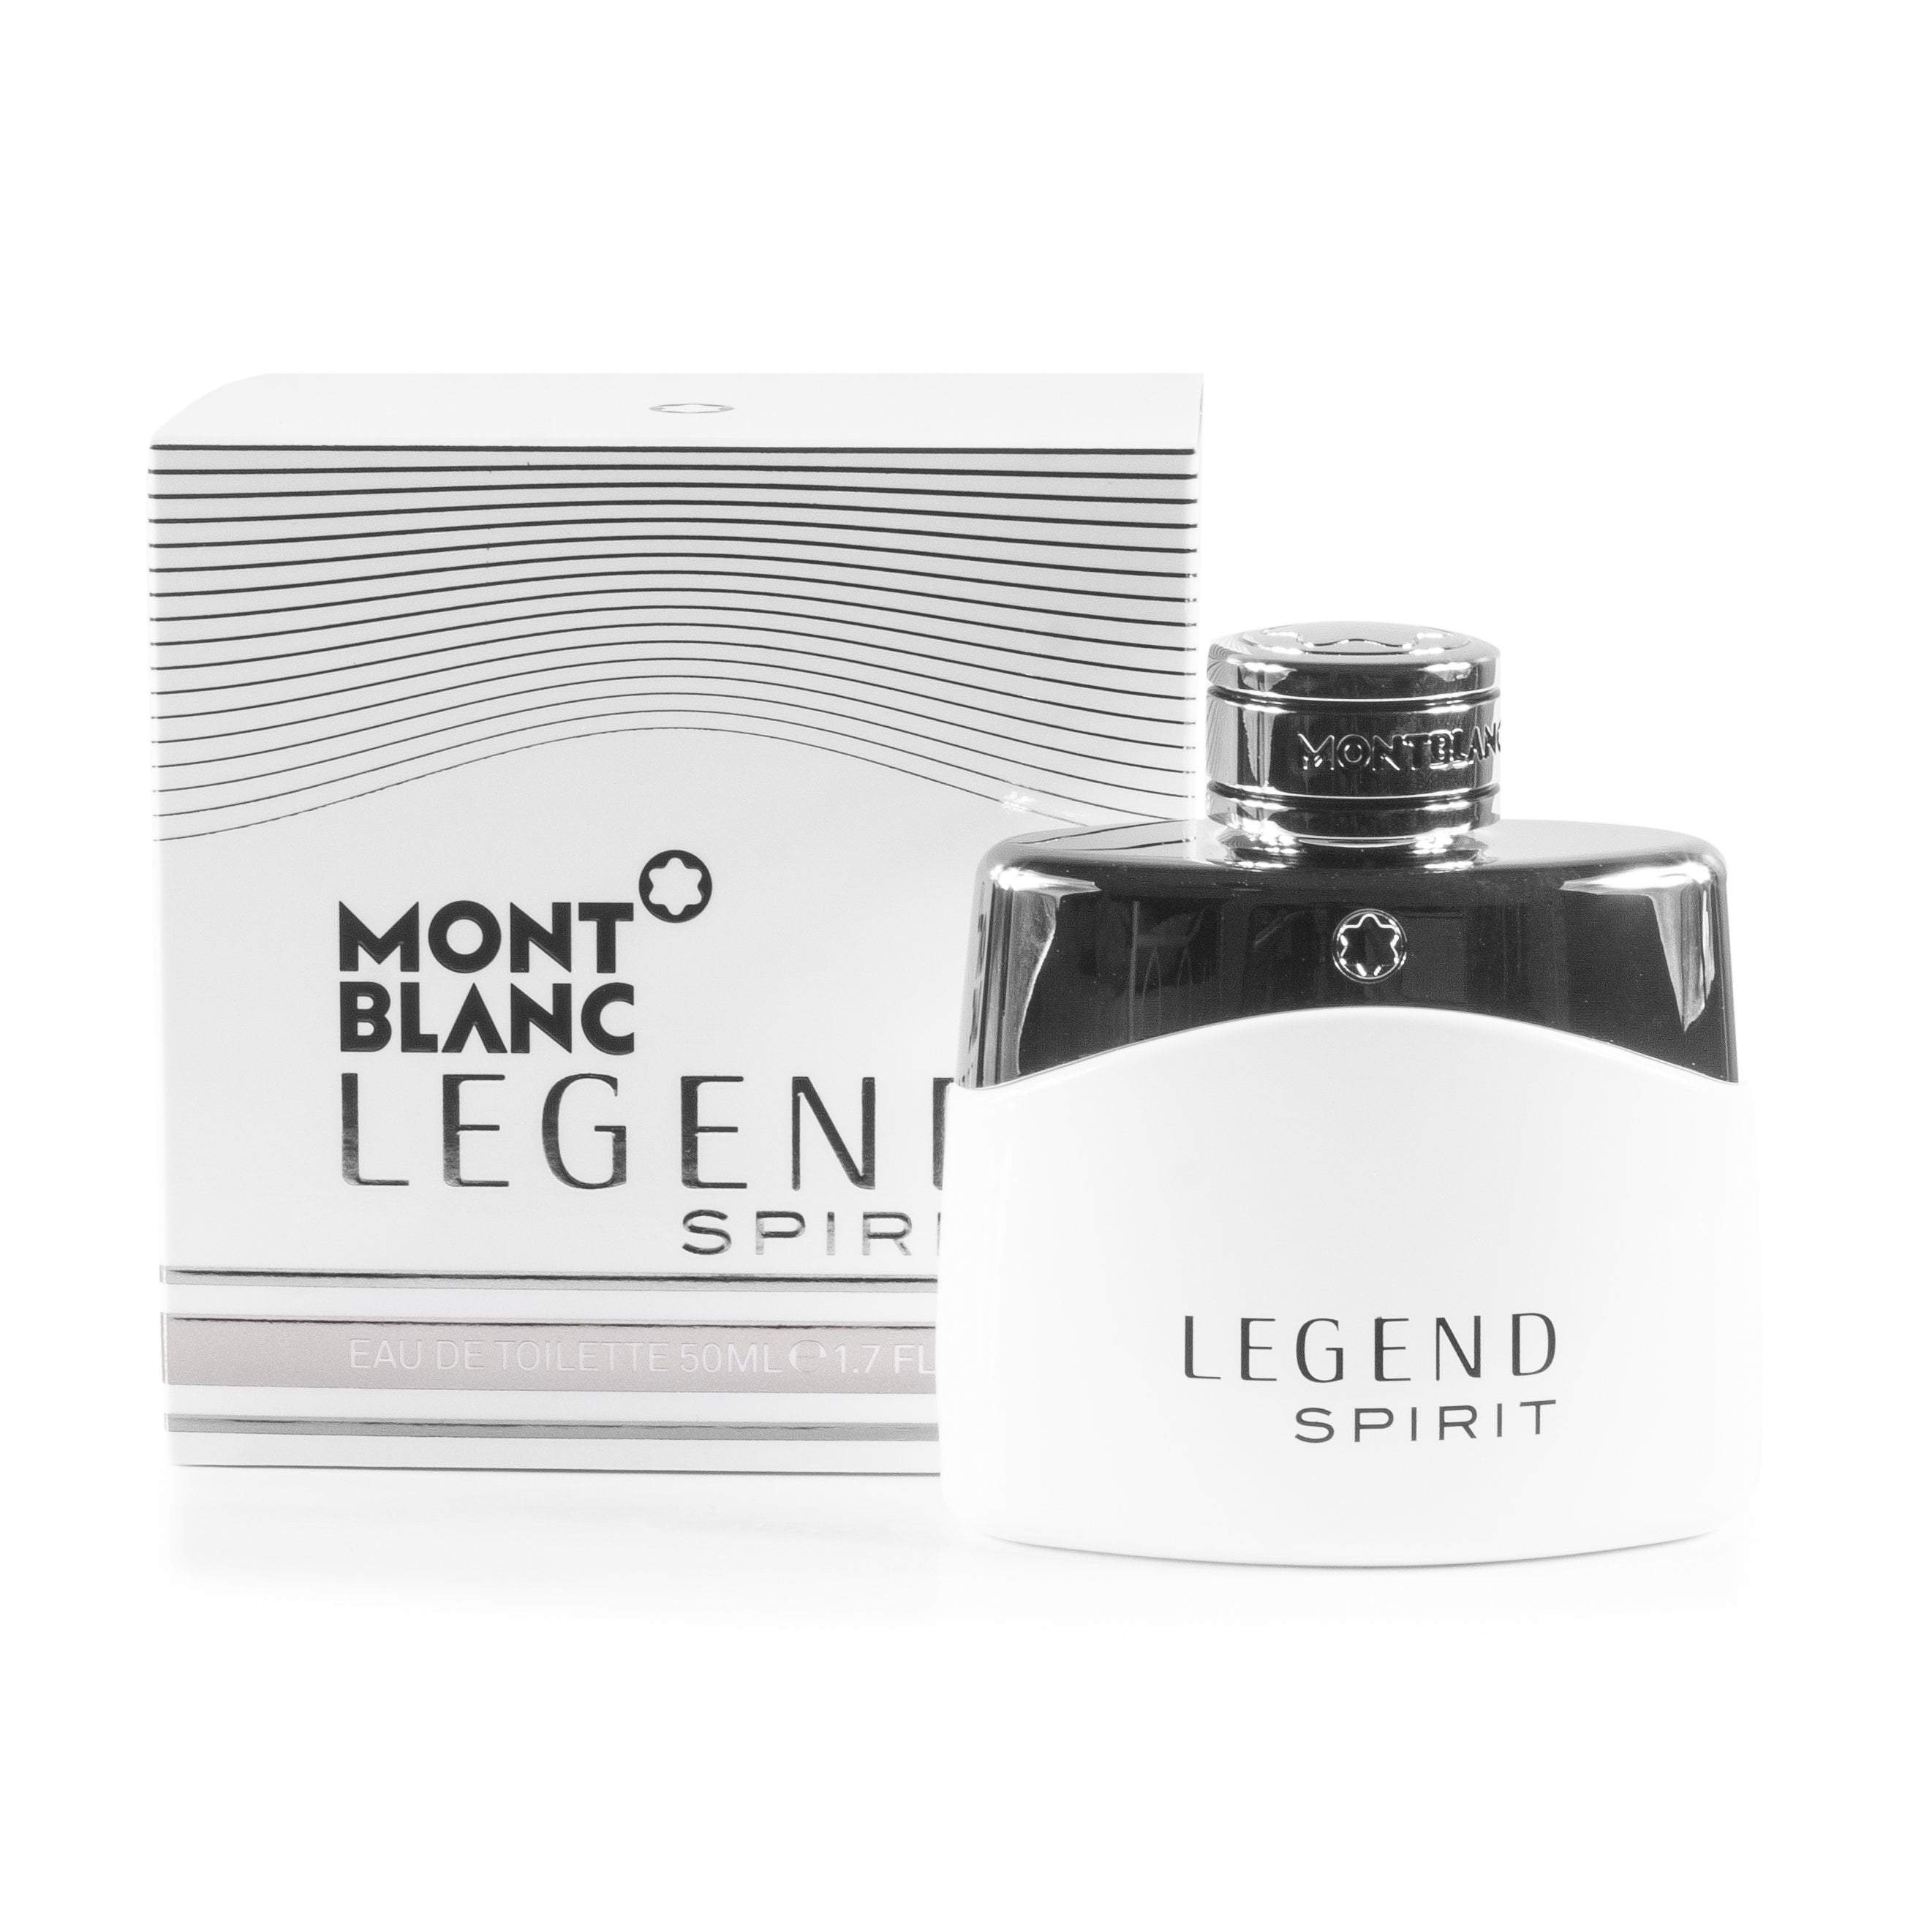 Perfumania Spray Mont Blanc Blanc Toilette Men De Legend By Spirit Eau Mont For –